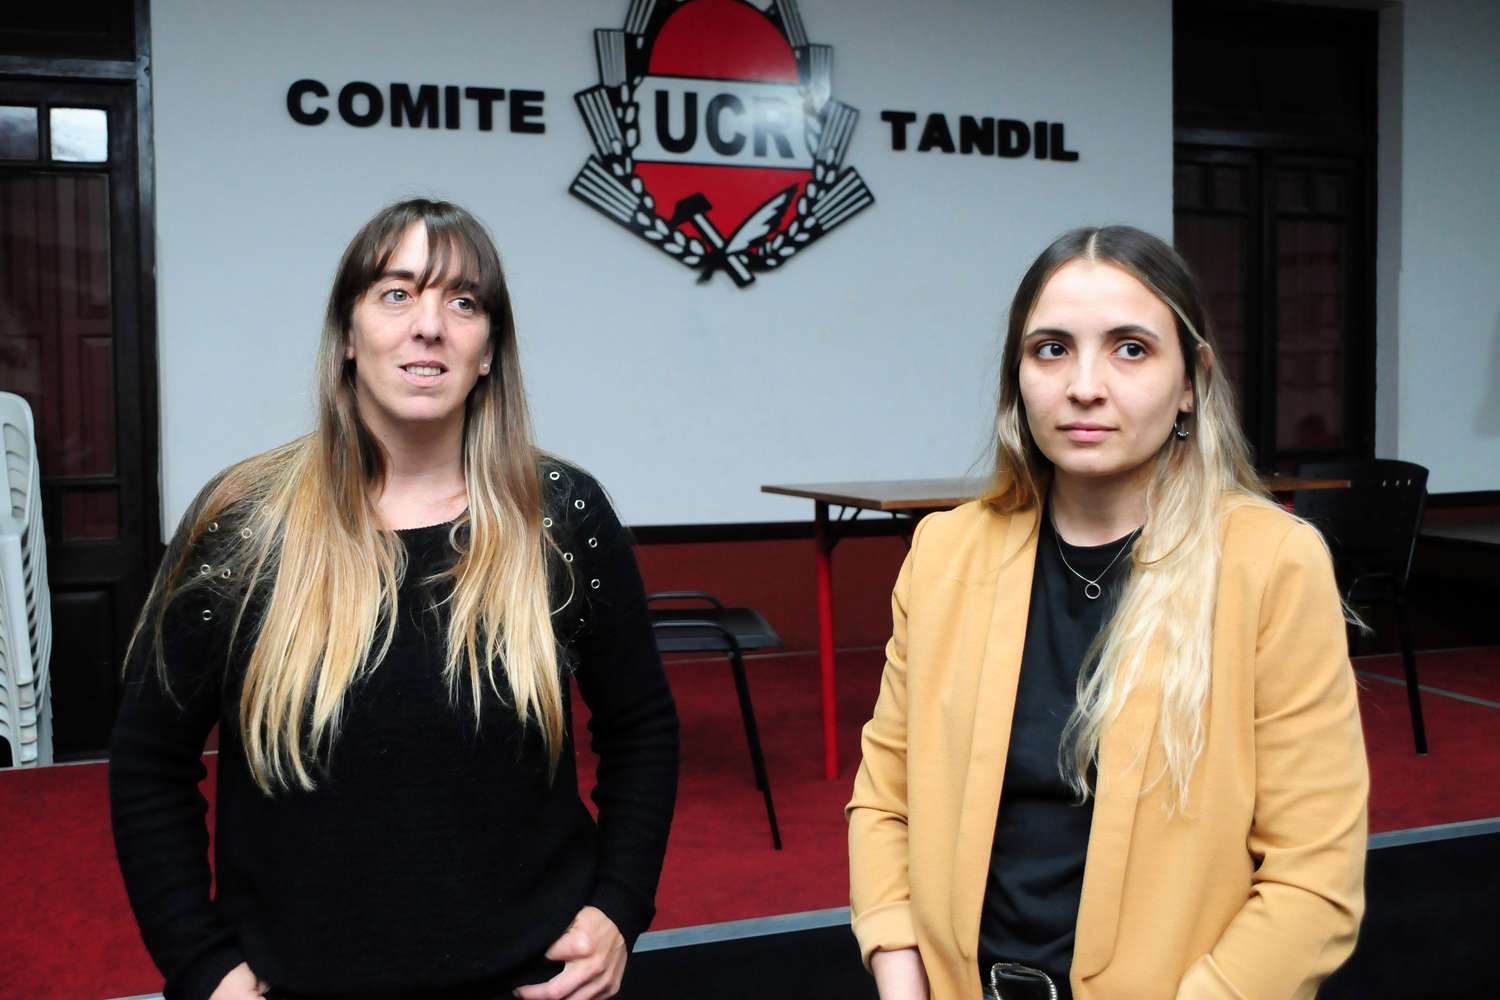 Matilde Vide y Delfina Campanella, dos mujeres jóvenes al frente del radicalismo local